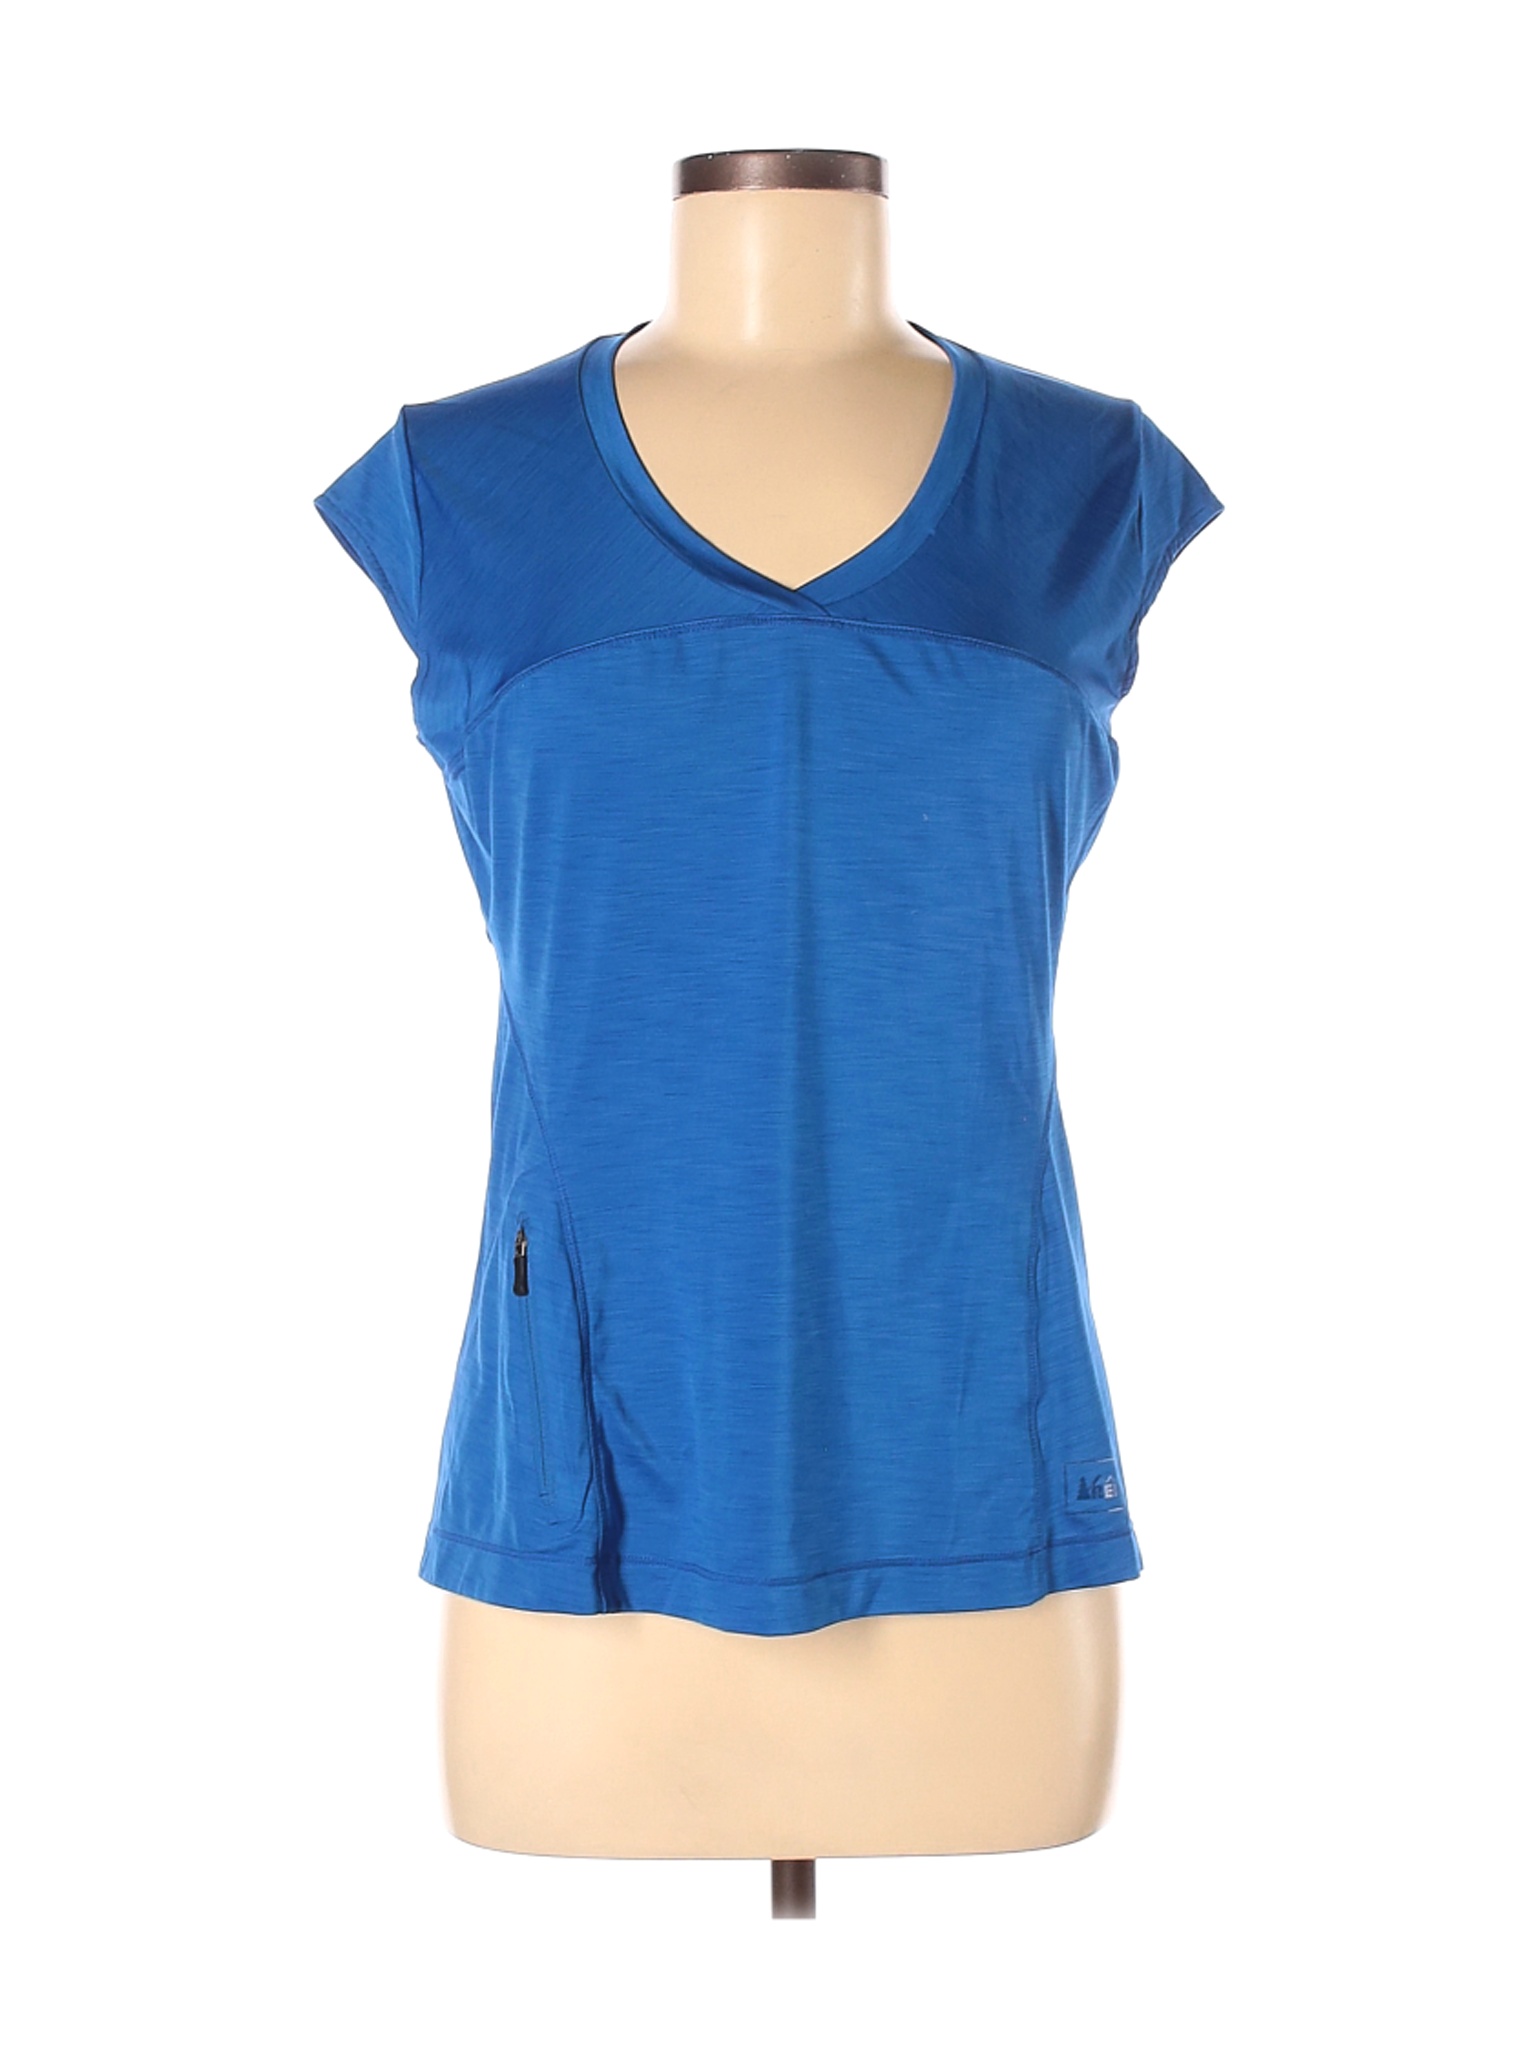 REI Women Blue Active T-Shirt M | eBay